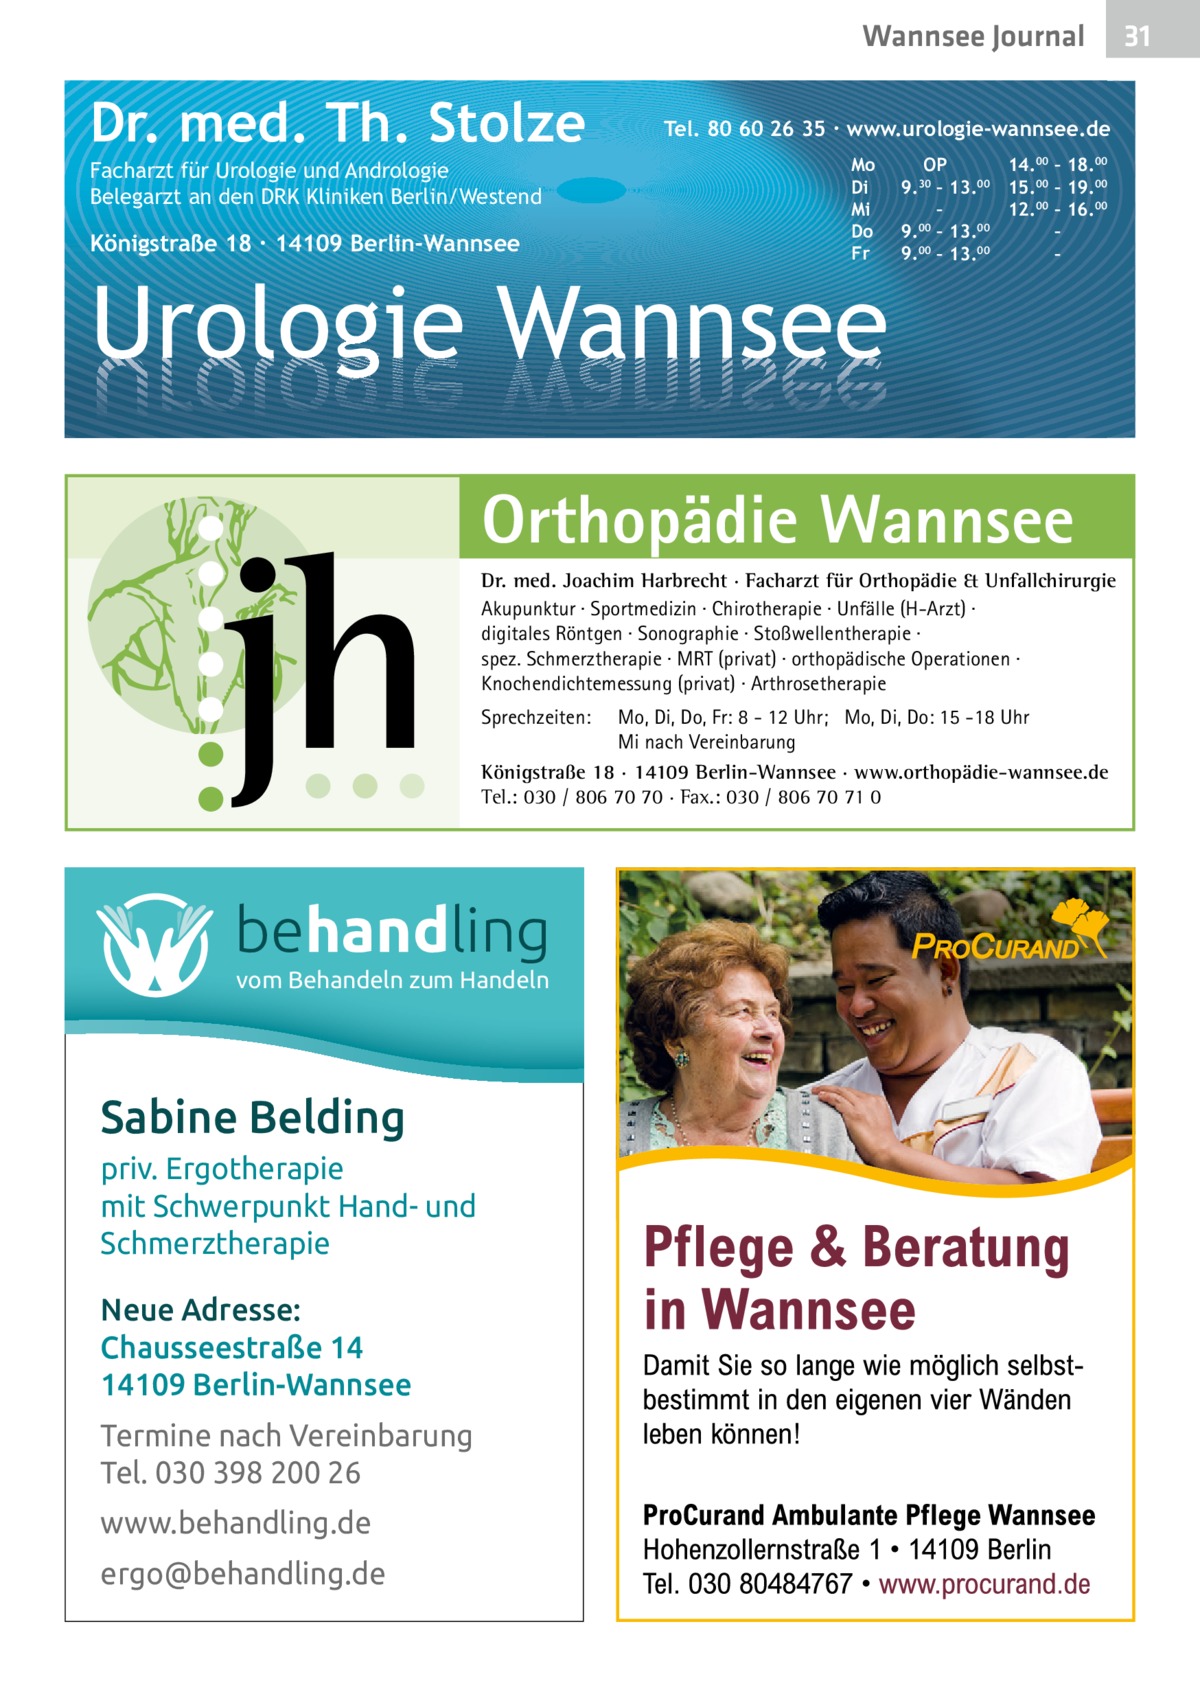 Wannsee Gesundheit Journal  Dr. med. Th. Stolze Facharzt für Urologie und Andrologie Belegarzt an den DRK Kliniken Berlin/Westend  Königstraße 18 ∙ 14109 Berlin-Wannsee  Tel. 80 60 26 35 ∙ www.urologie-wannsee.de Mo Di Mi Do Fr  Urologie Wannsee  OP 14.00 – 18.00 9.30 – 13.00 15.00 – 19.00 – 12.00 – 16.00 9.00 – 13.00 – 9.00 – 13.00 – –  Orthopädie Wannsee Dr. med. Joachim Harbrecht · Facharzt für Orthopädie & Unfallchirurgie Akupunktur · Sportmedizin · Chirotherapie · Unfälle (H-Arzt) · digitales Röntgen · Sonographie · Stoßwellentherapie · spez. Schmerztherapie · MRT (privat) · orthopädische Operationen · Knochendichtemessung (privat) · Arthrosetherapie Sprechzeiten:  Mo, Di, Do, Fr: 8 - 12 Uhr; Mo, Di, Do: 15 -18 Uhr Mi nach Vereinbarung Königstraße 18 · 14109 Berlin-Wannsee · www.orthopädie-wannsee.de Tel.: 030 / 806 70 70 · Fax.: 030 / 806 70 71 0  behandling vom Behandeln zum Handeln  Sabine Belding priv. Ergotherapie mit Schwerpunkt Hand- und Schmerztherapie Neue Adresse: Chausseestraße 14 14109 Berlin-Wannsee Termine nach Vereinbarung Tel. 030 398 200 26 www.behandling.de ergo@behandling.de  31